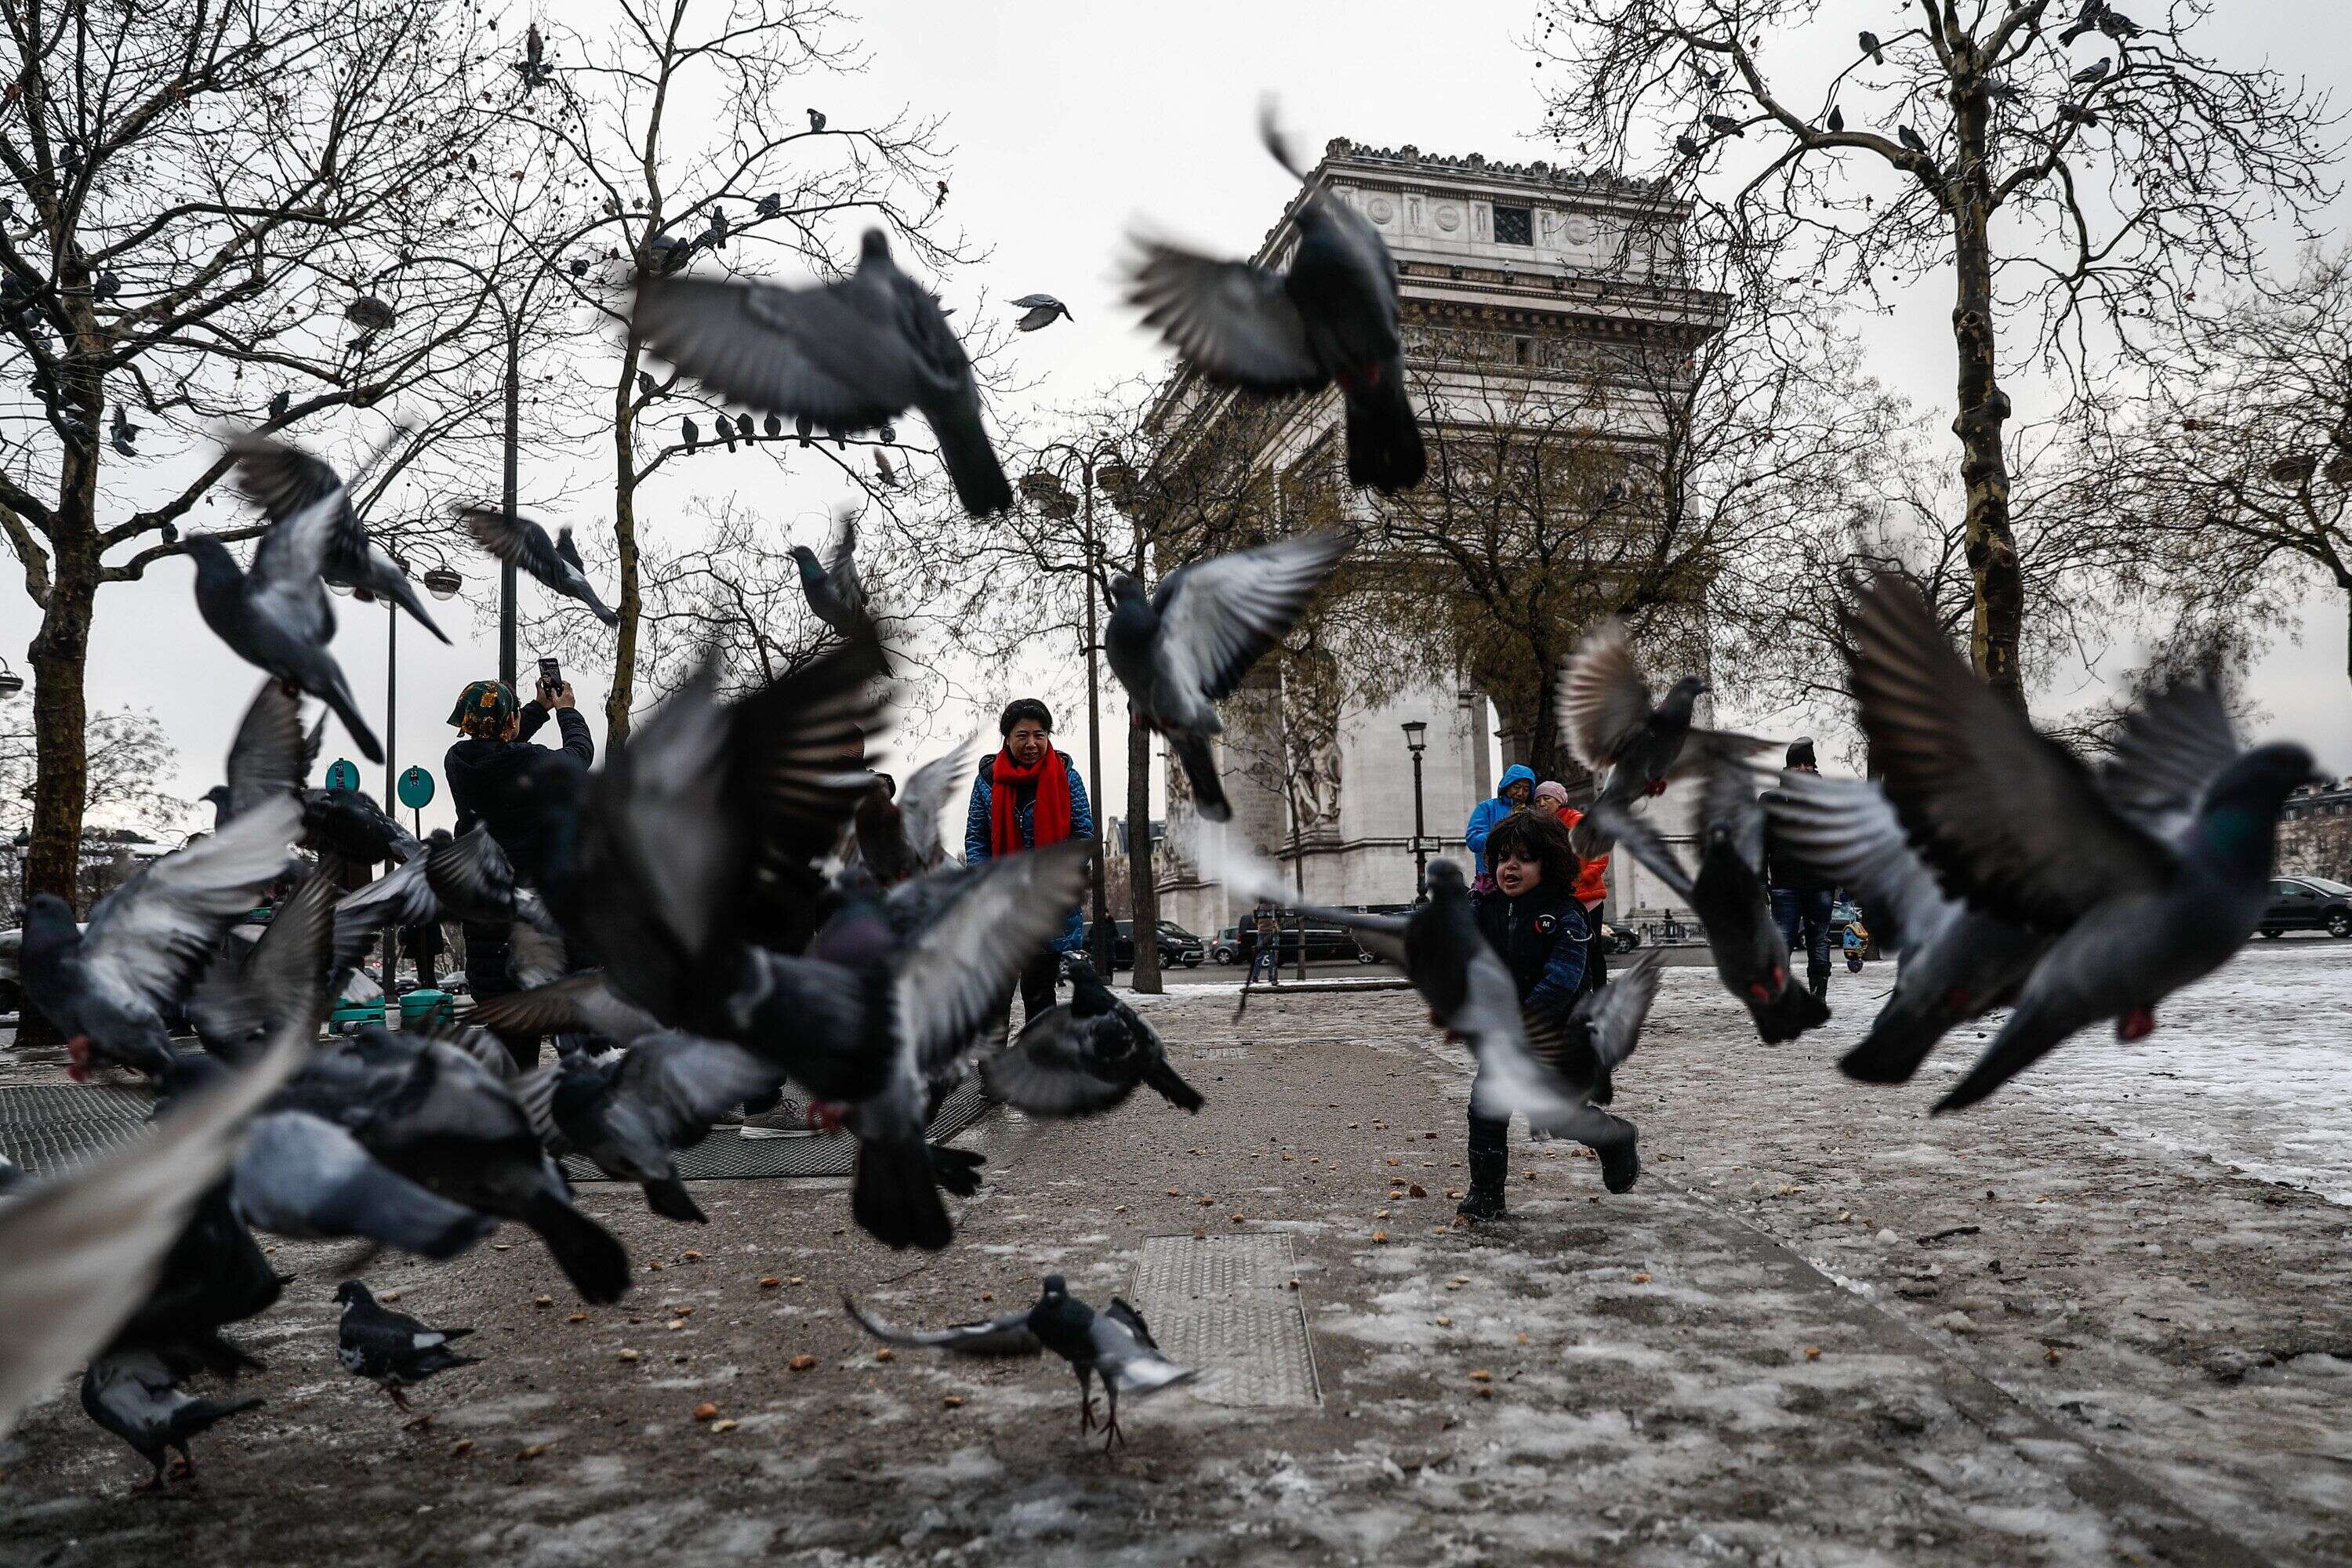 La population des pigeons de Paris est estimée entre 80 et 100 000 individus (1 pigeon pour 25 habitants).